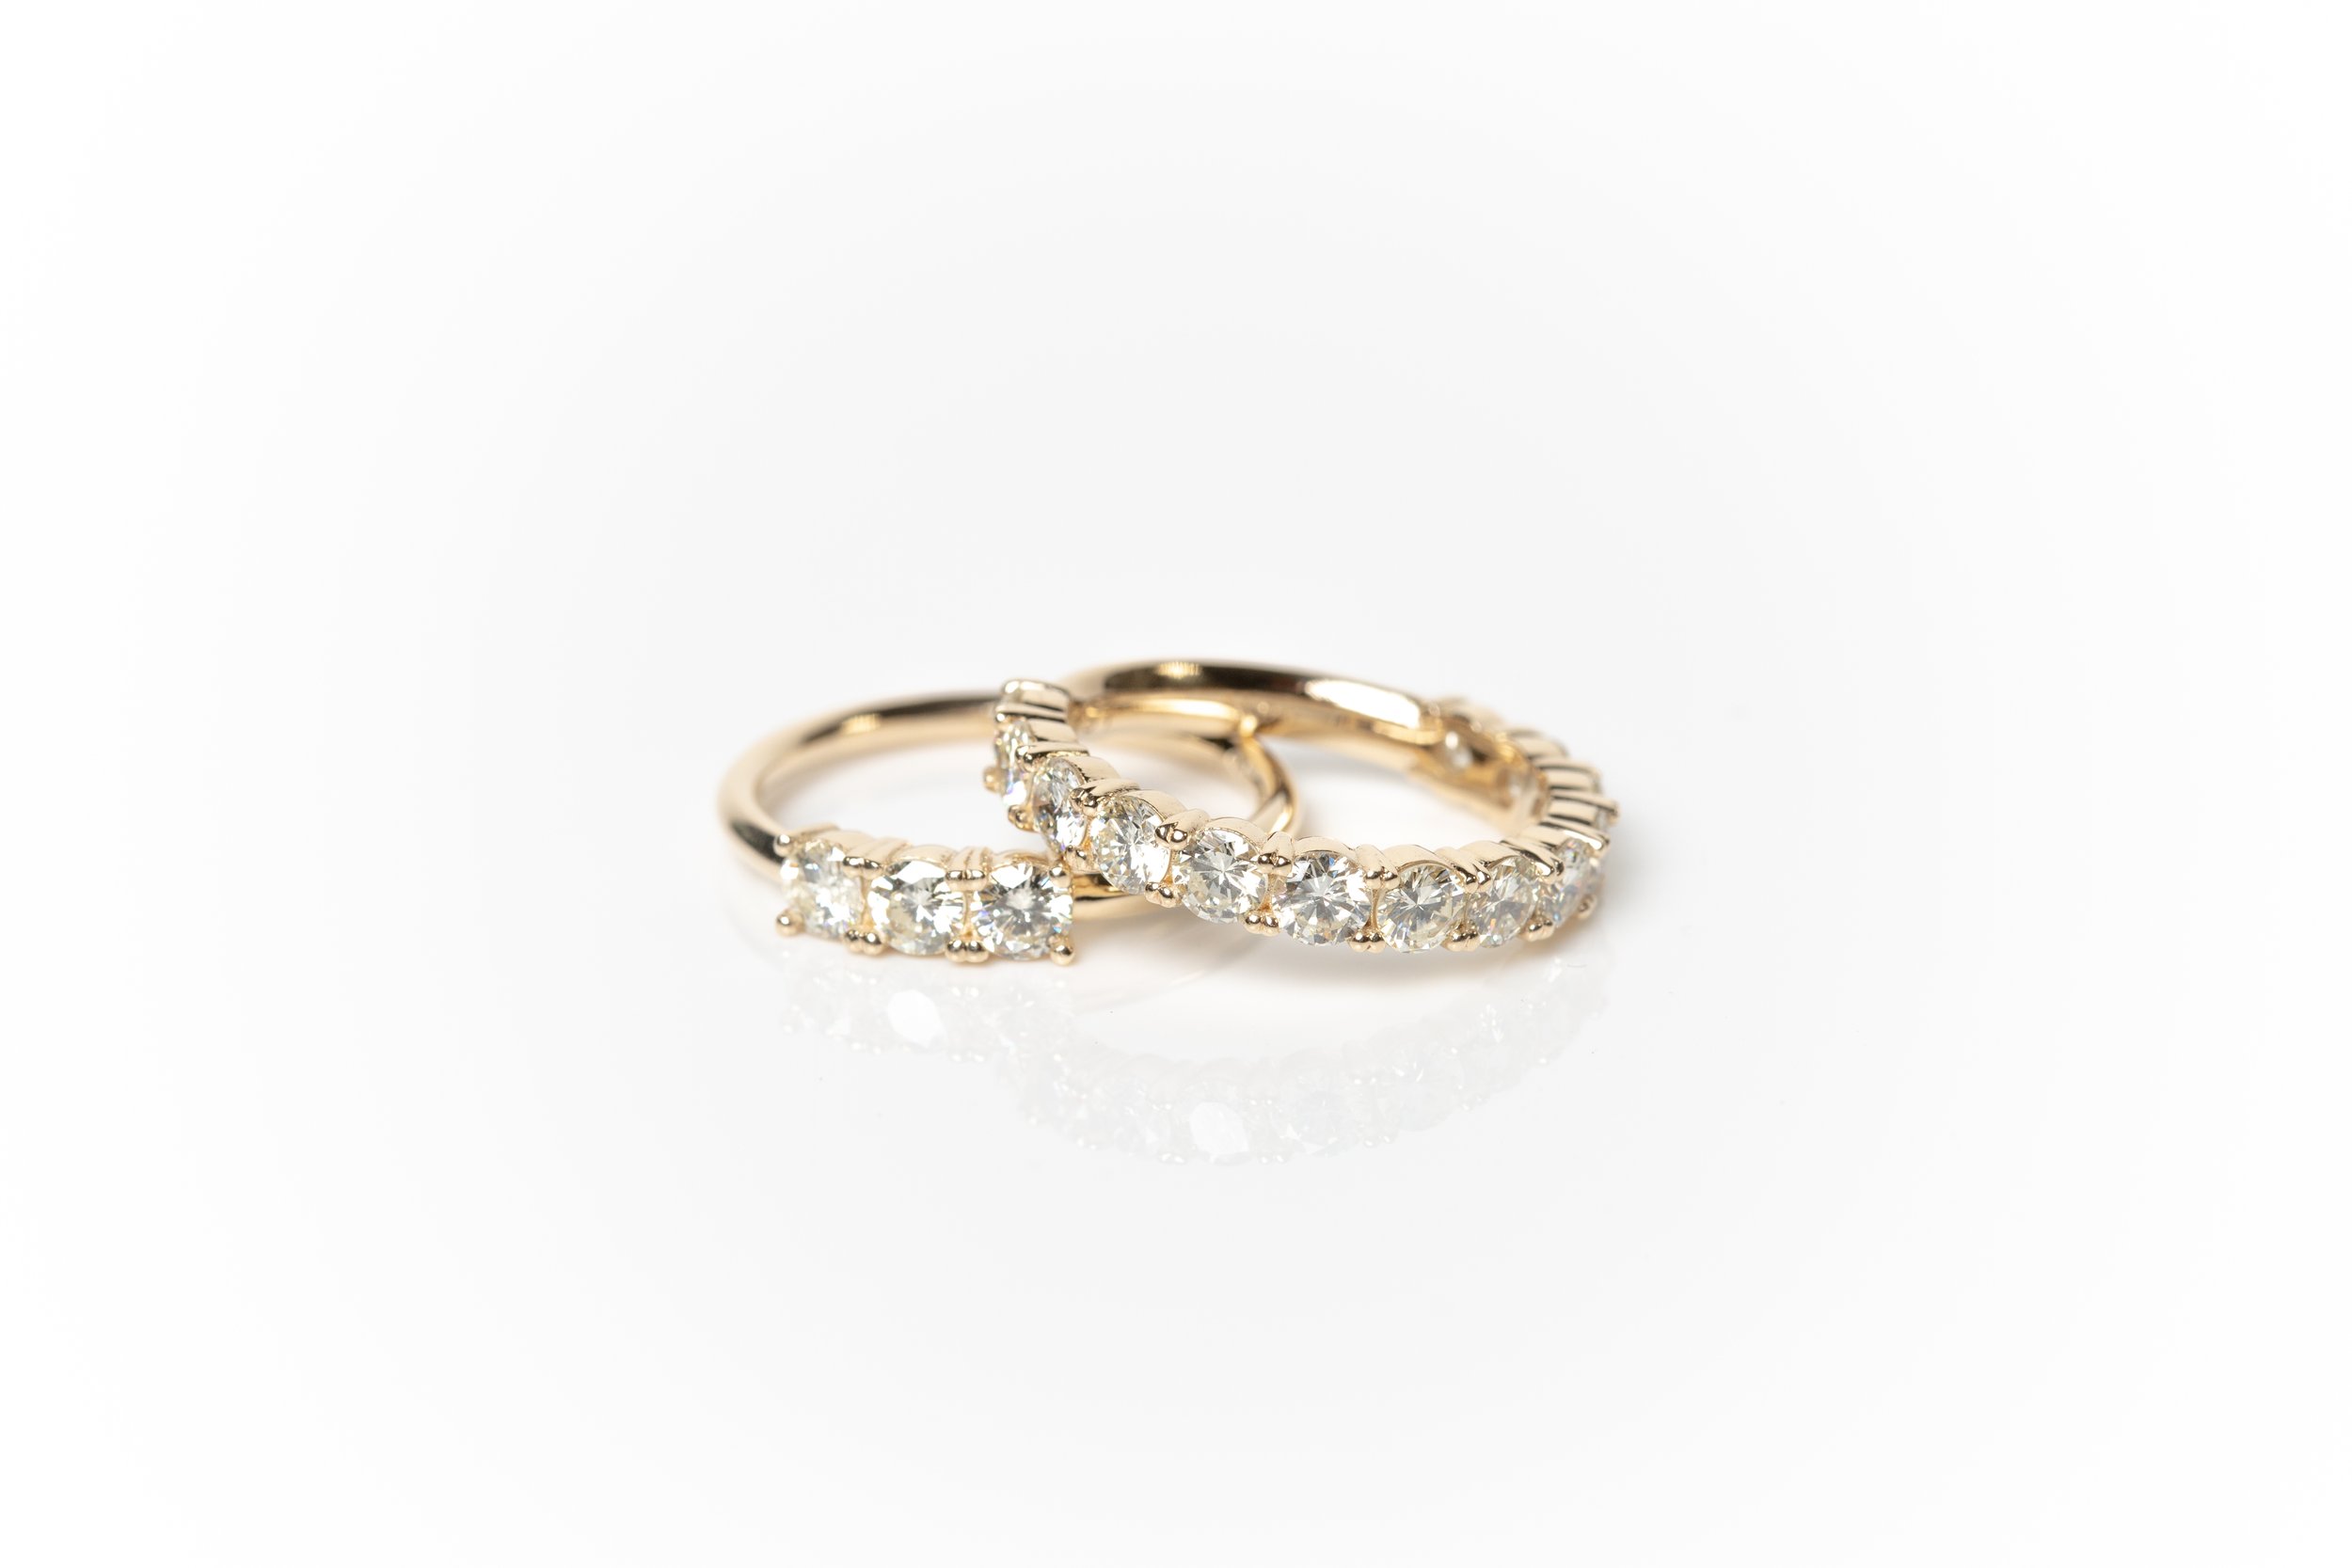 Leigh Sandusky Jewelry - Colorado Wedding Jewelry